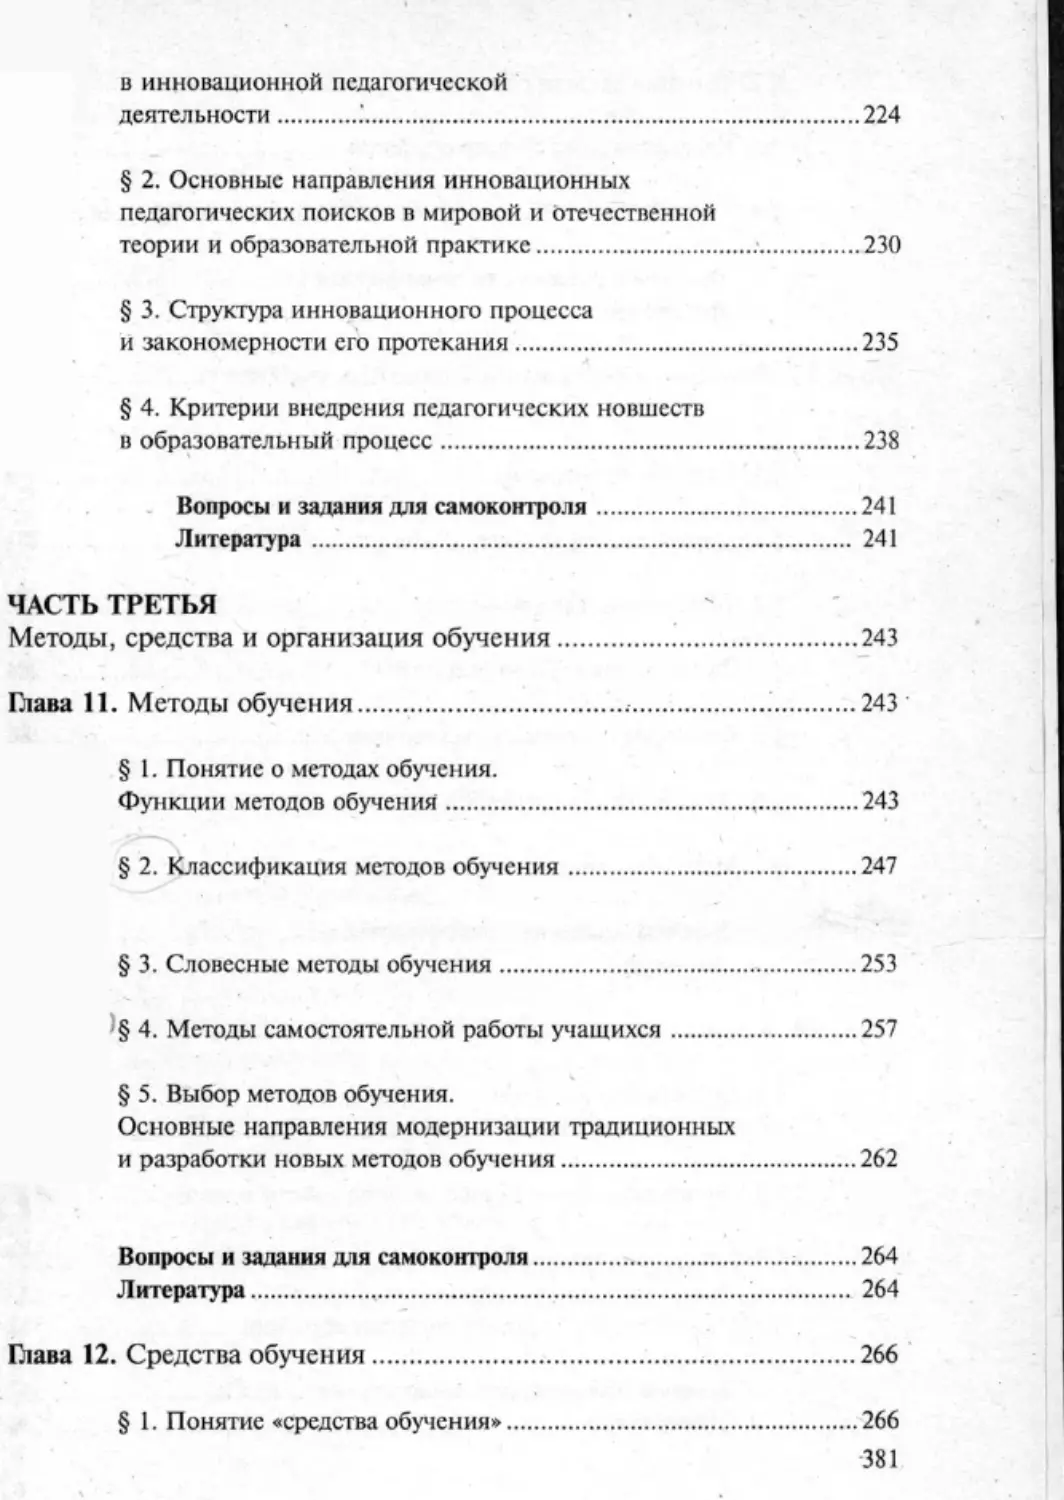 Загрекова Л.В., Николаева В.В - 0382